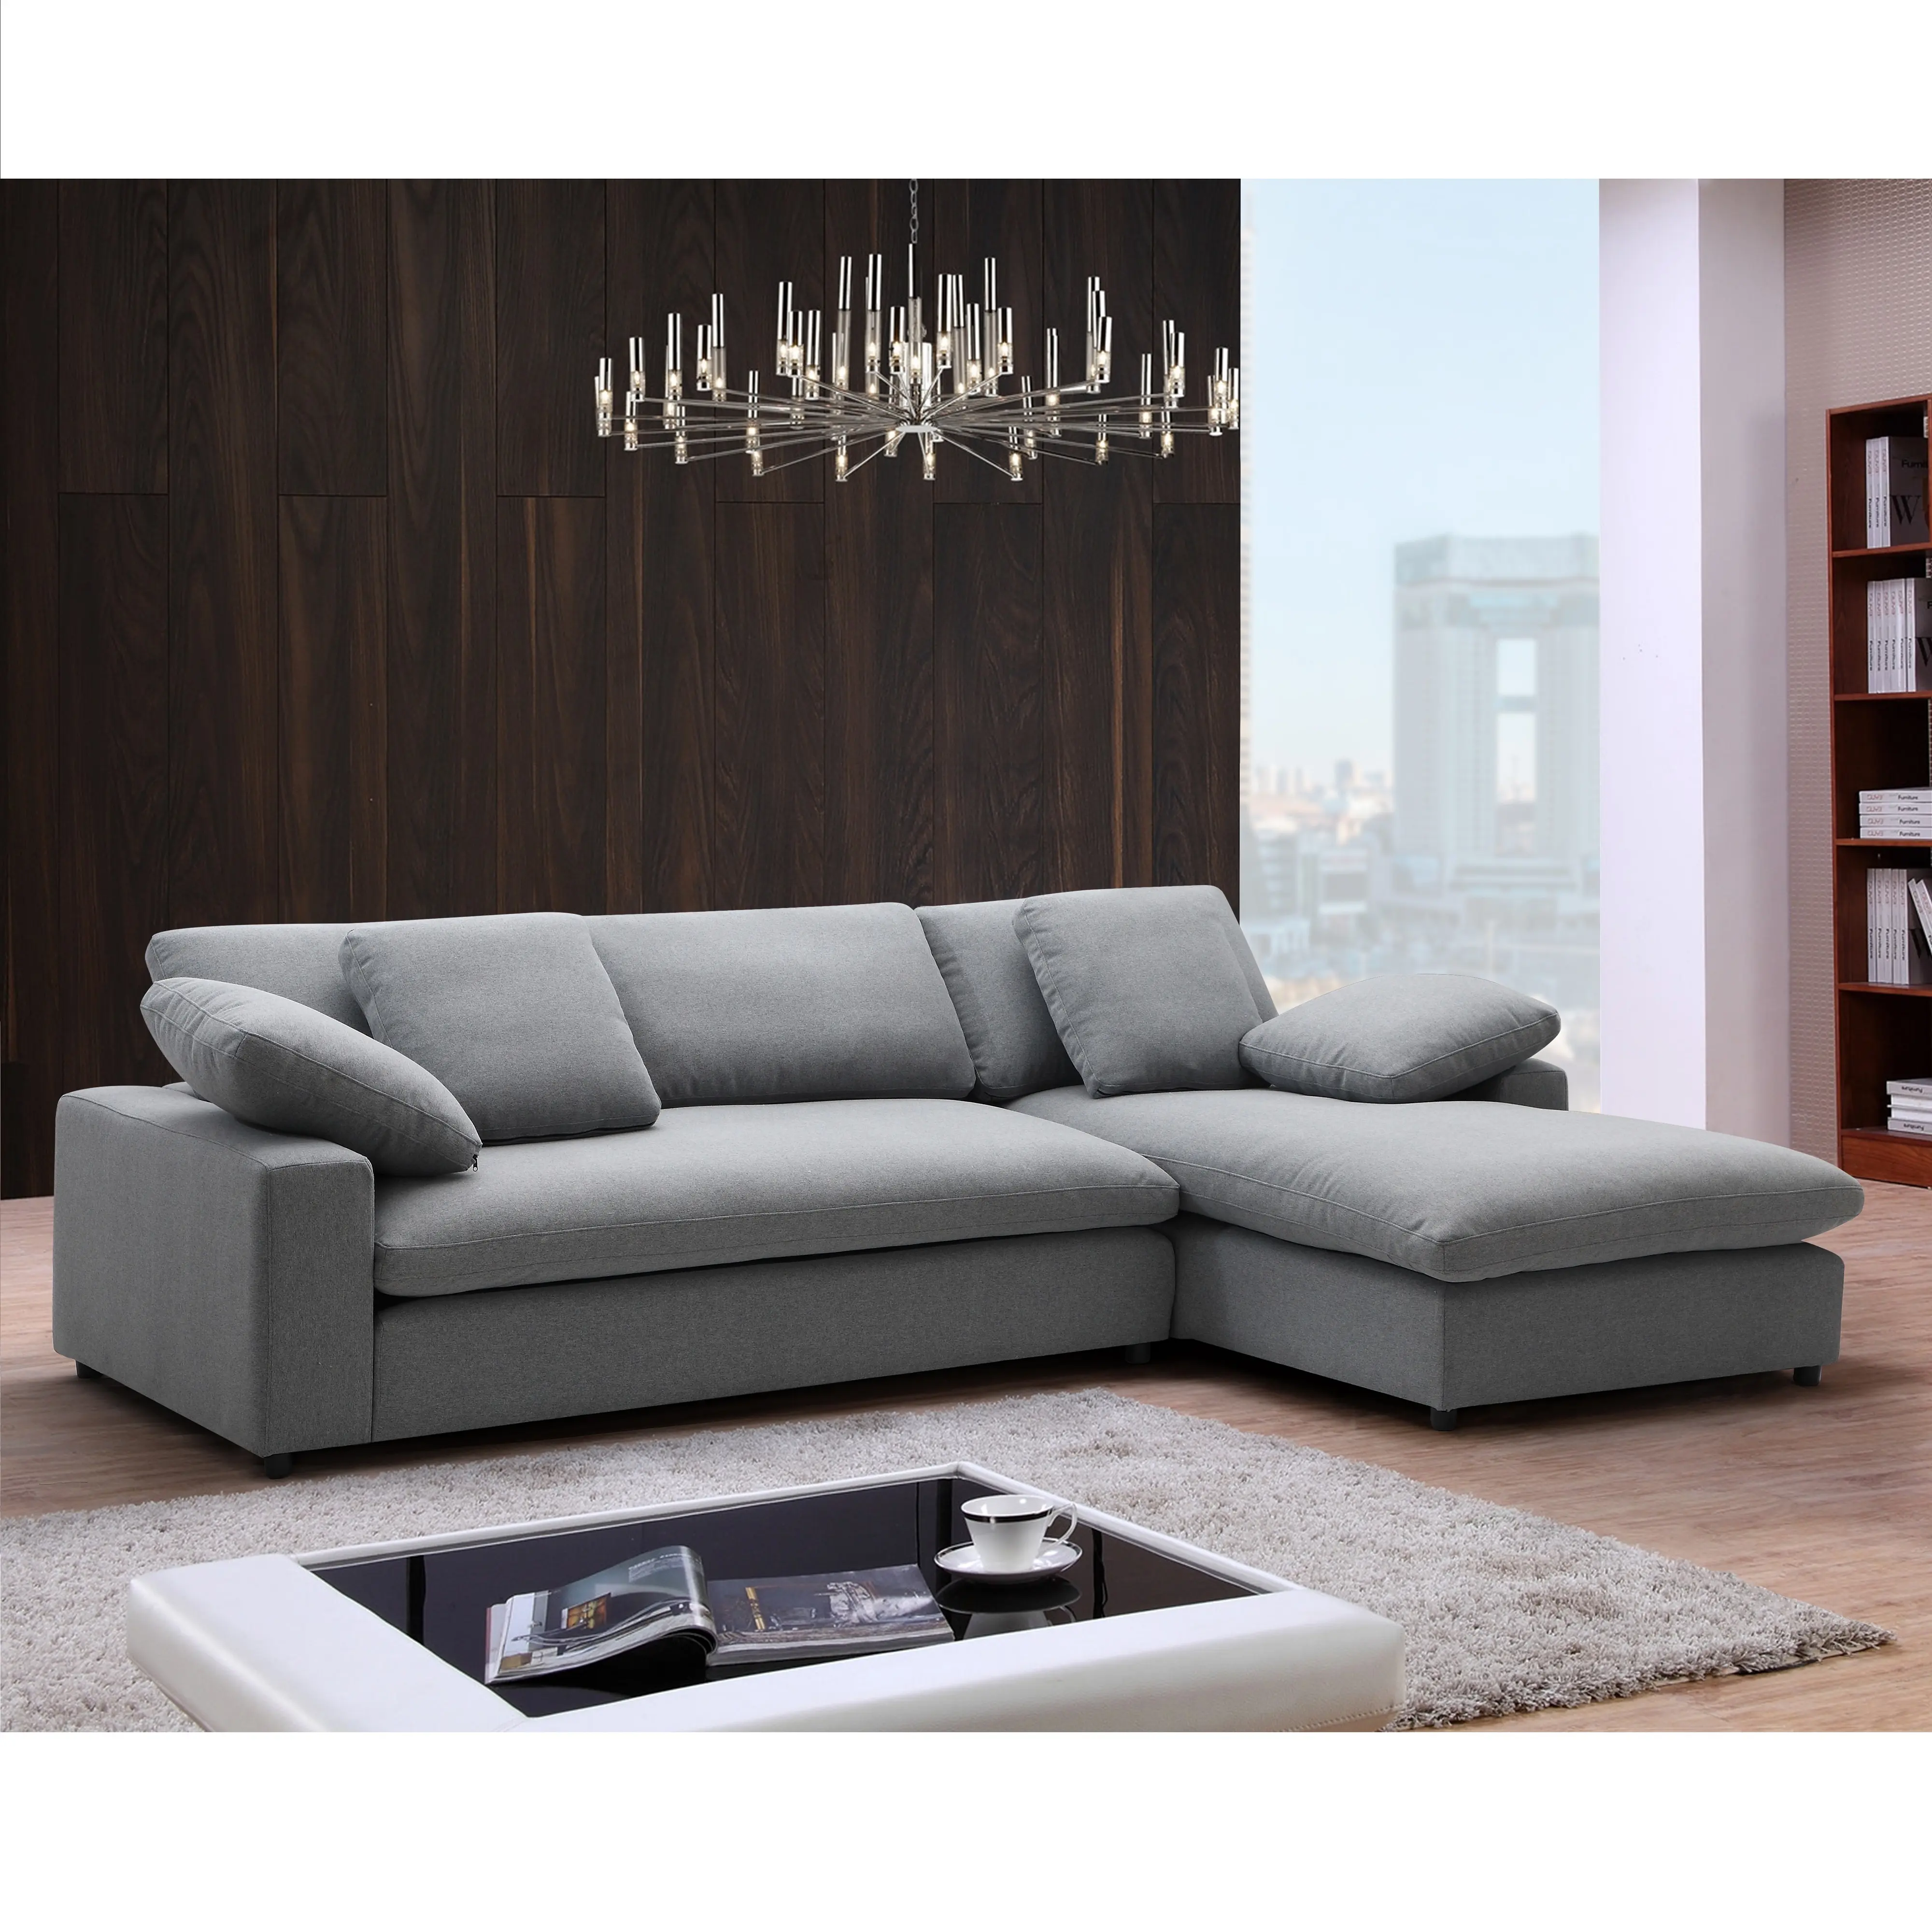 تصميم حديث ، أريكة مريحة جدًا على شكل حرف L ، ركنة من الريش ، مقسمة لغرفة المعيشة